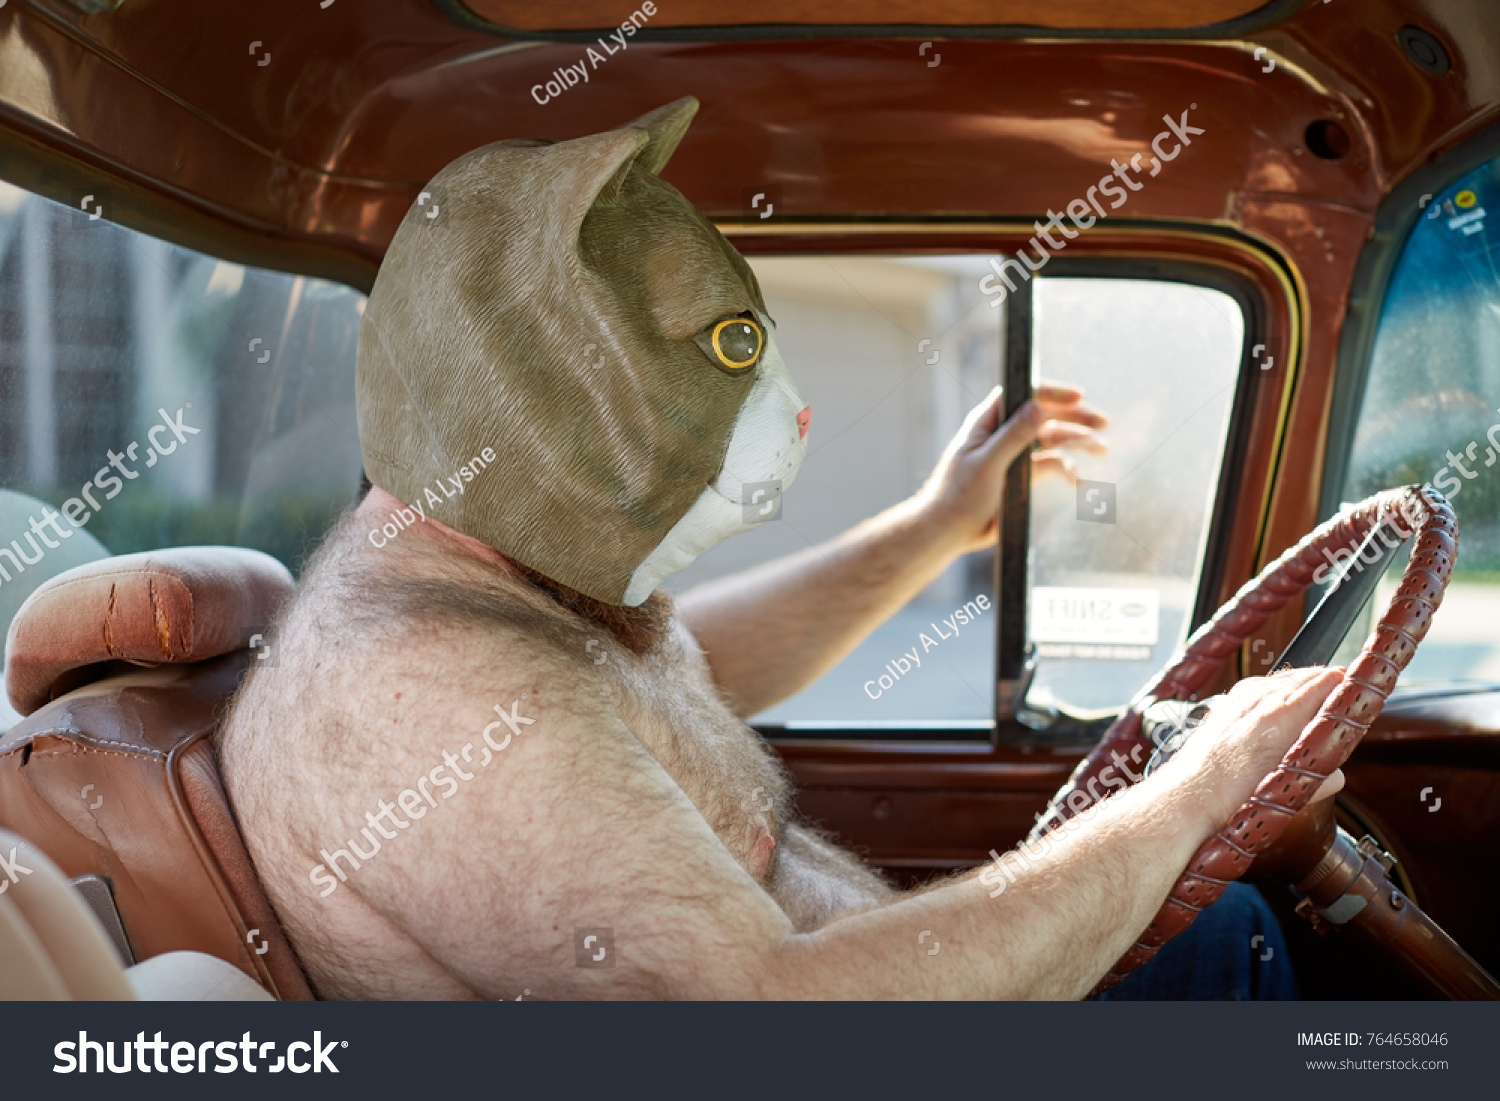 車の運転中に奇妙でおかしな猫マスクを着た シャツのない太り過ぎの男性の横から見ると の写真素材 今すぐ編集